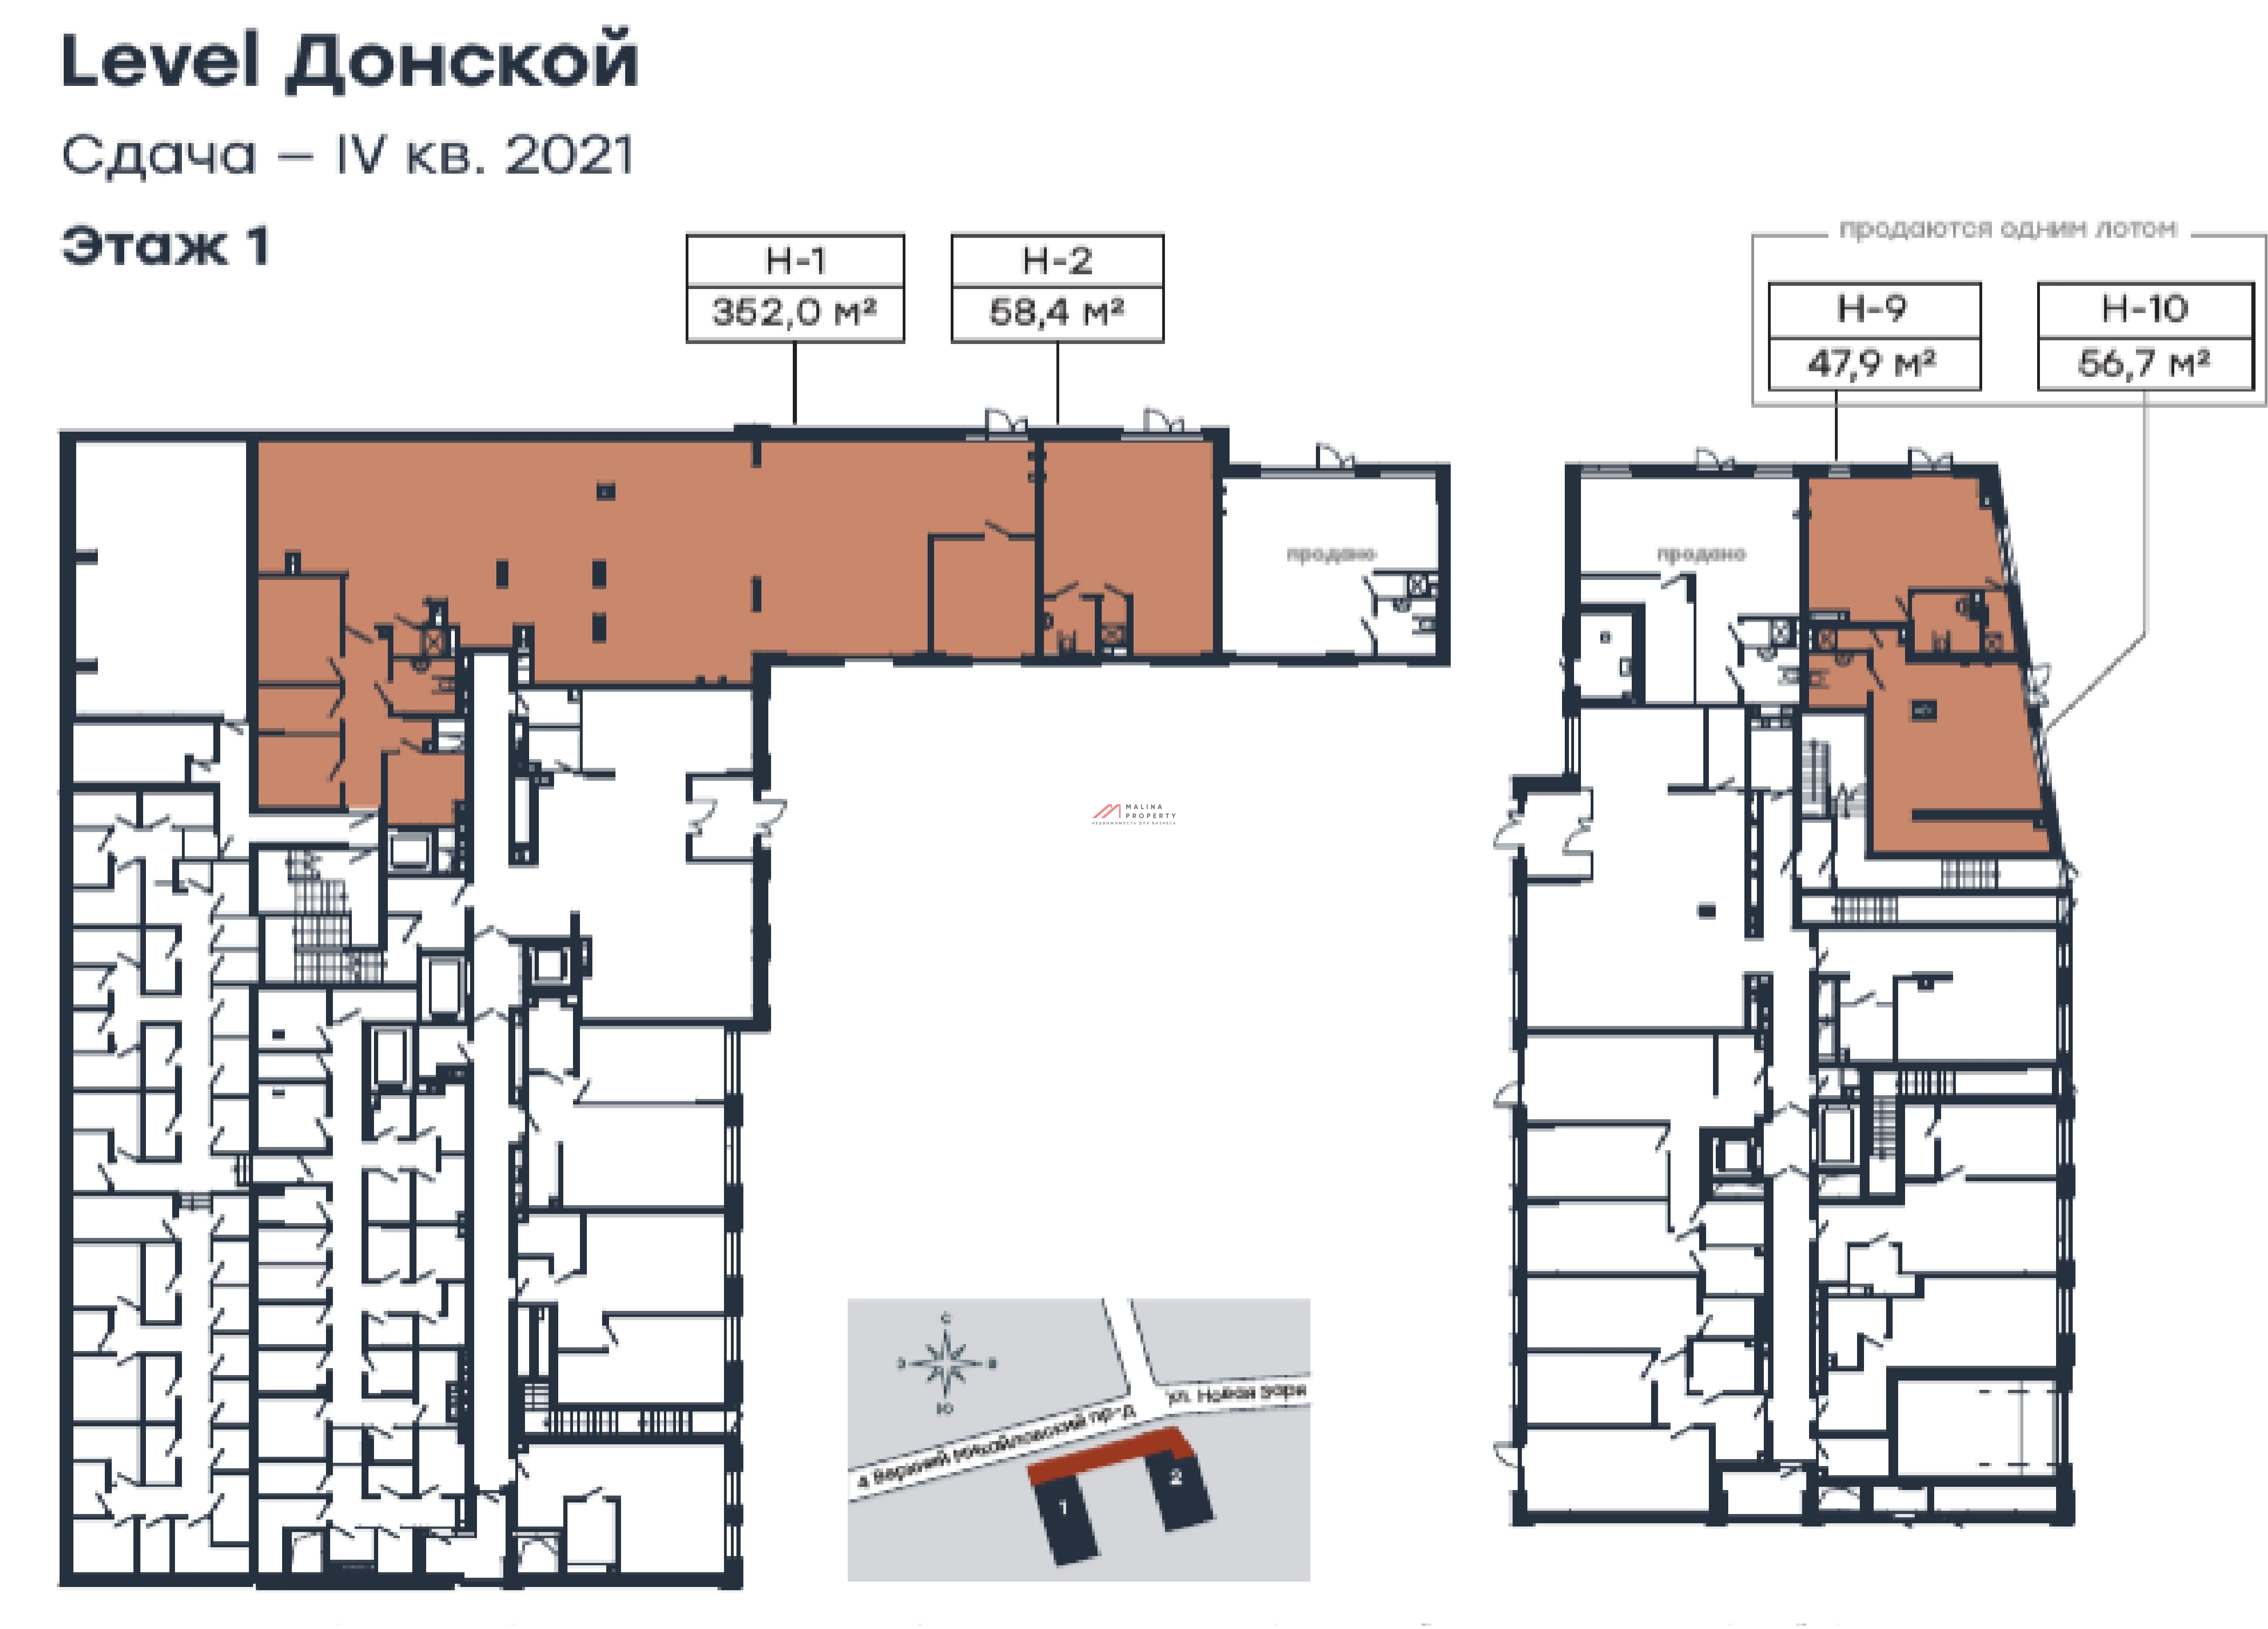 Продажа торгового помещения в ЖК "Level Донской"